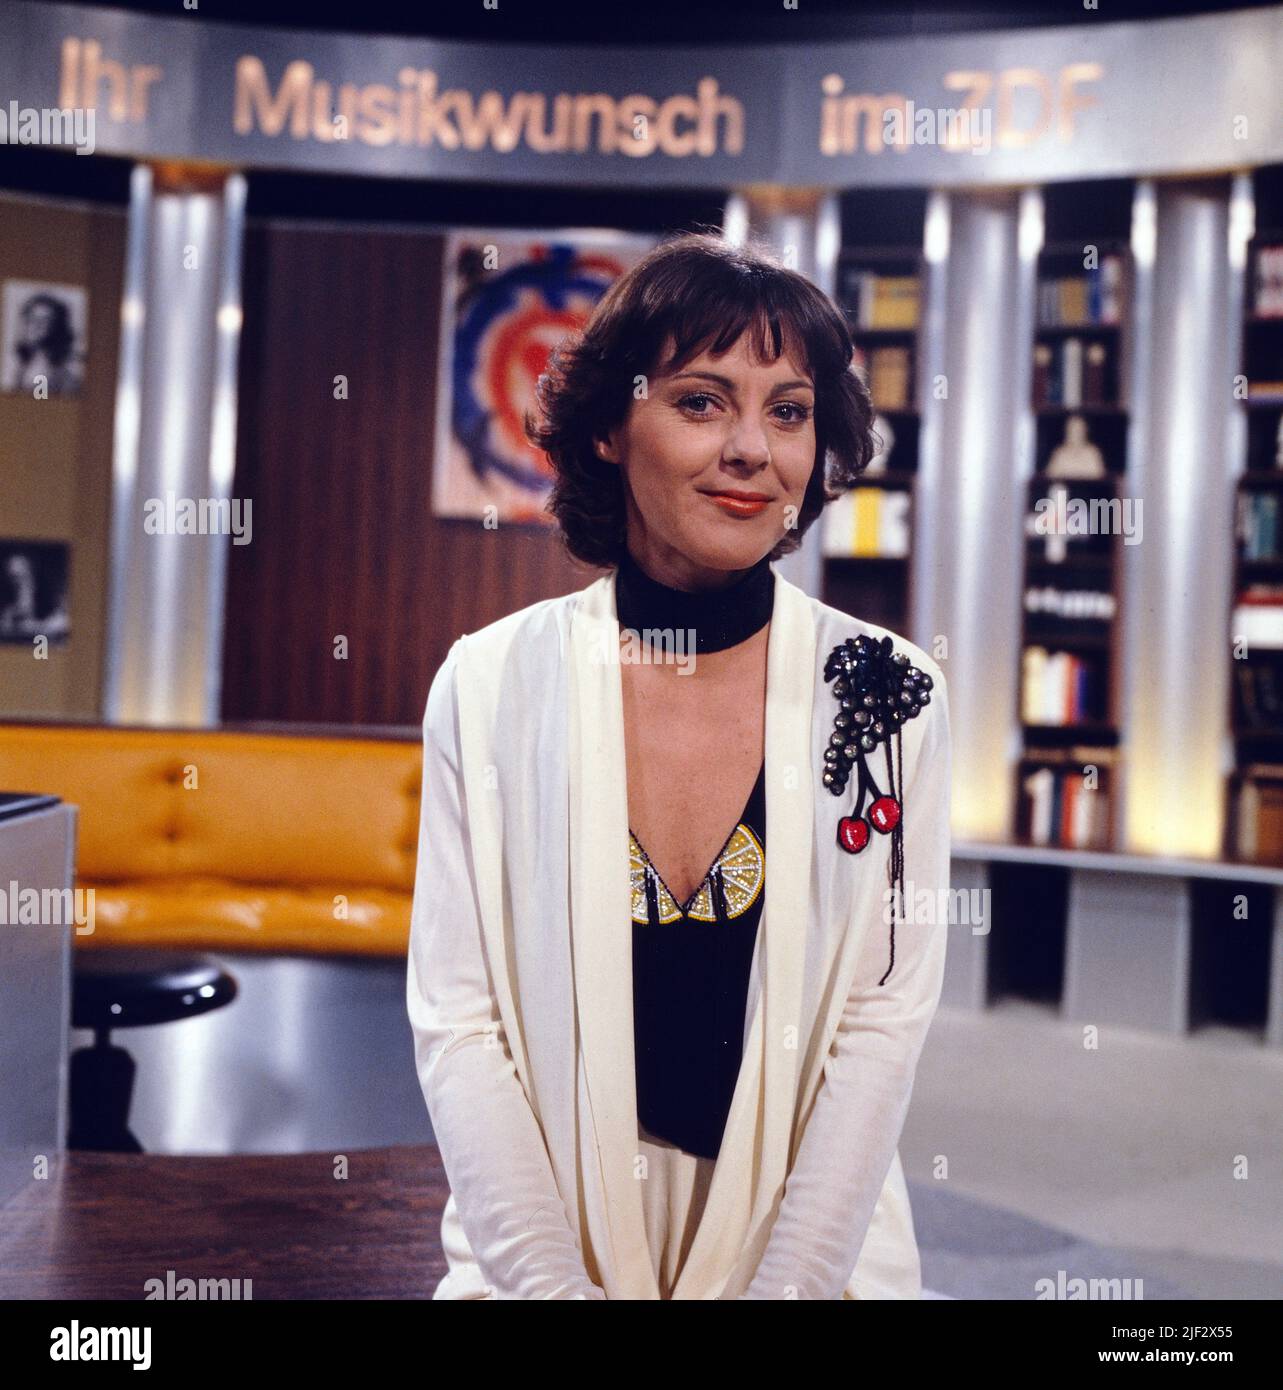 Ihr Musikwunsch, ZDF Musikshow am Wochenende, Deutschland, 1981, Moderatorin: Opernsängerin Trudeliese Schmidt. Ihr Musikwunsch, TV Weekend music show, Germany, 1981, presenter: German Opera singer Trudeliese Schmidt. Stock Photo